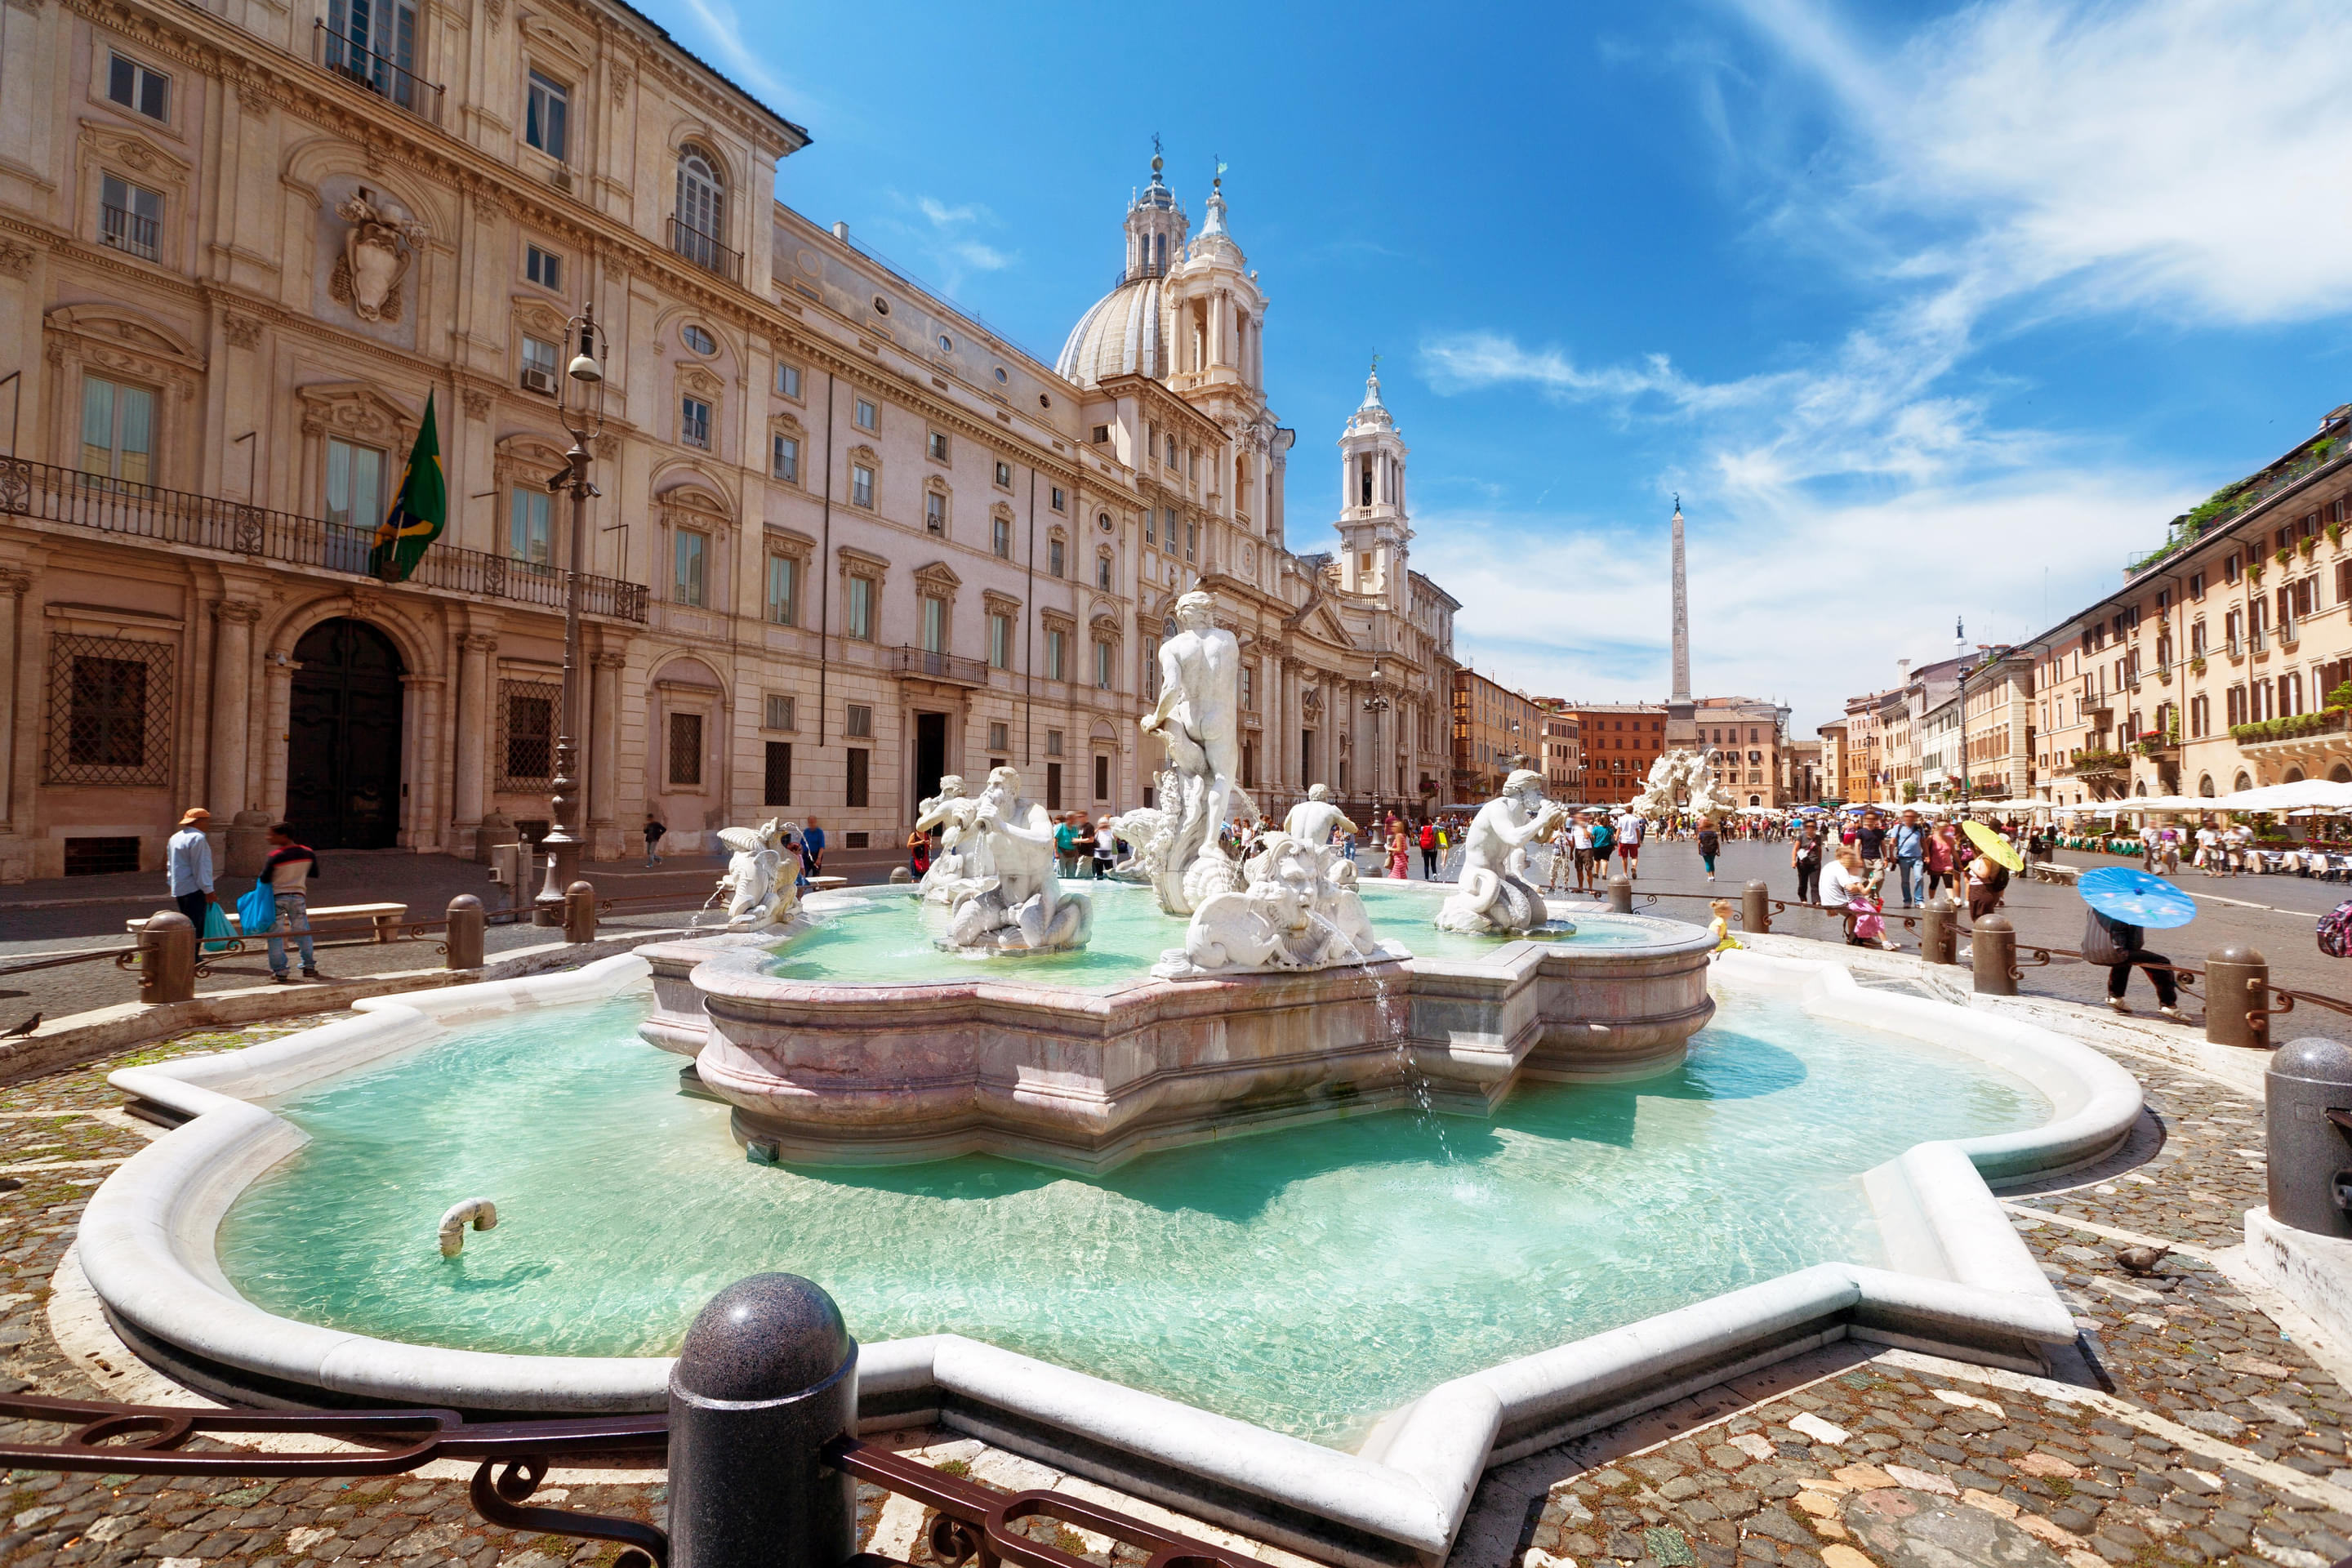 Piazza Navona Overview